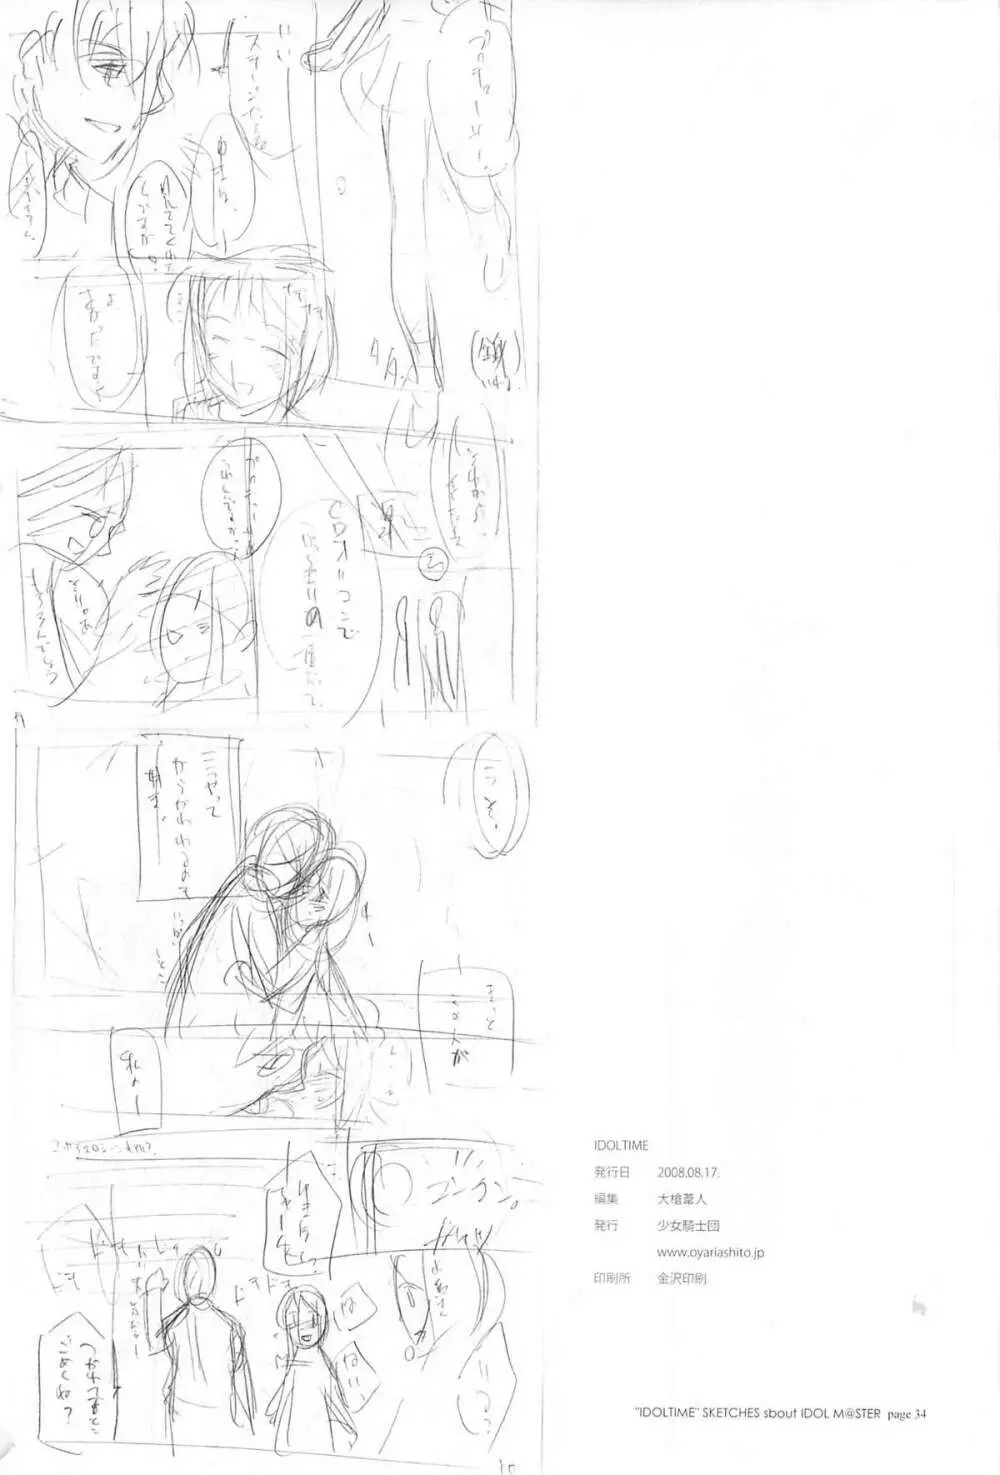 IDOLTIME featuring YUKIHO HAGIWARA Page.33